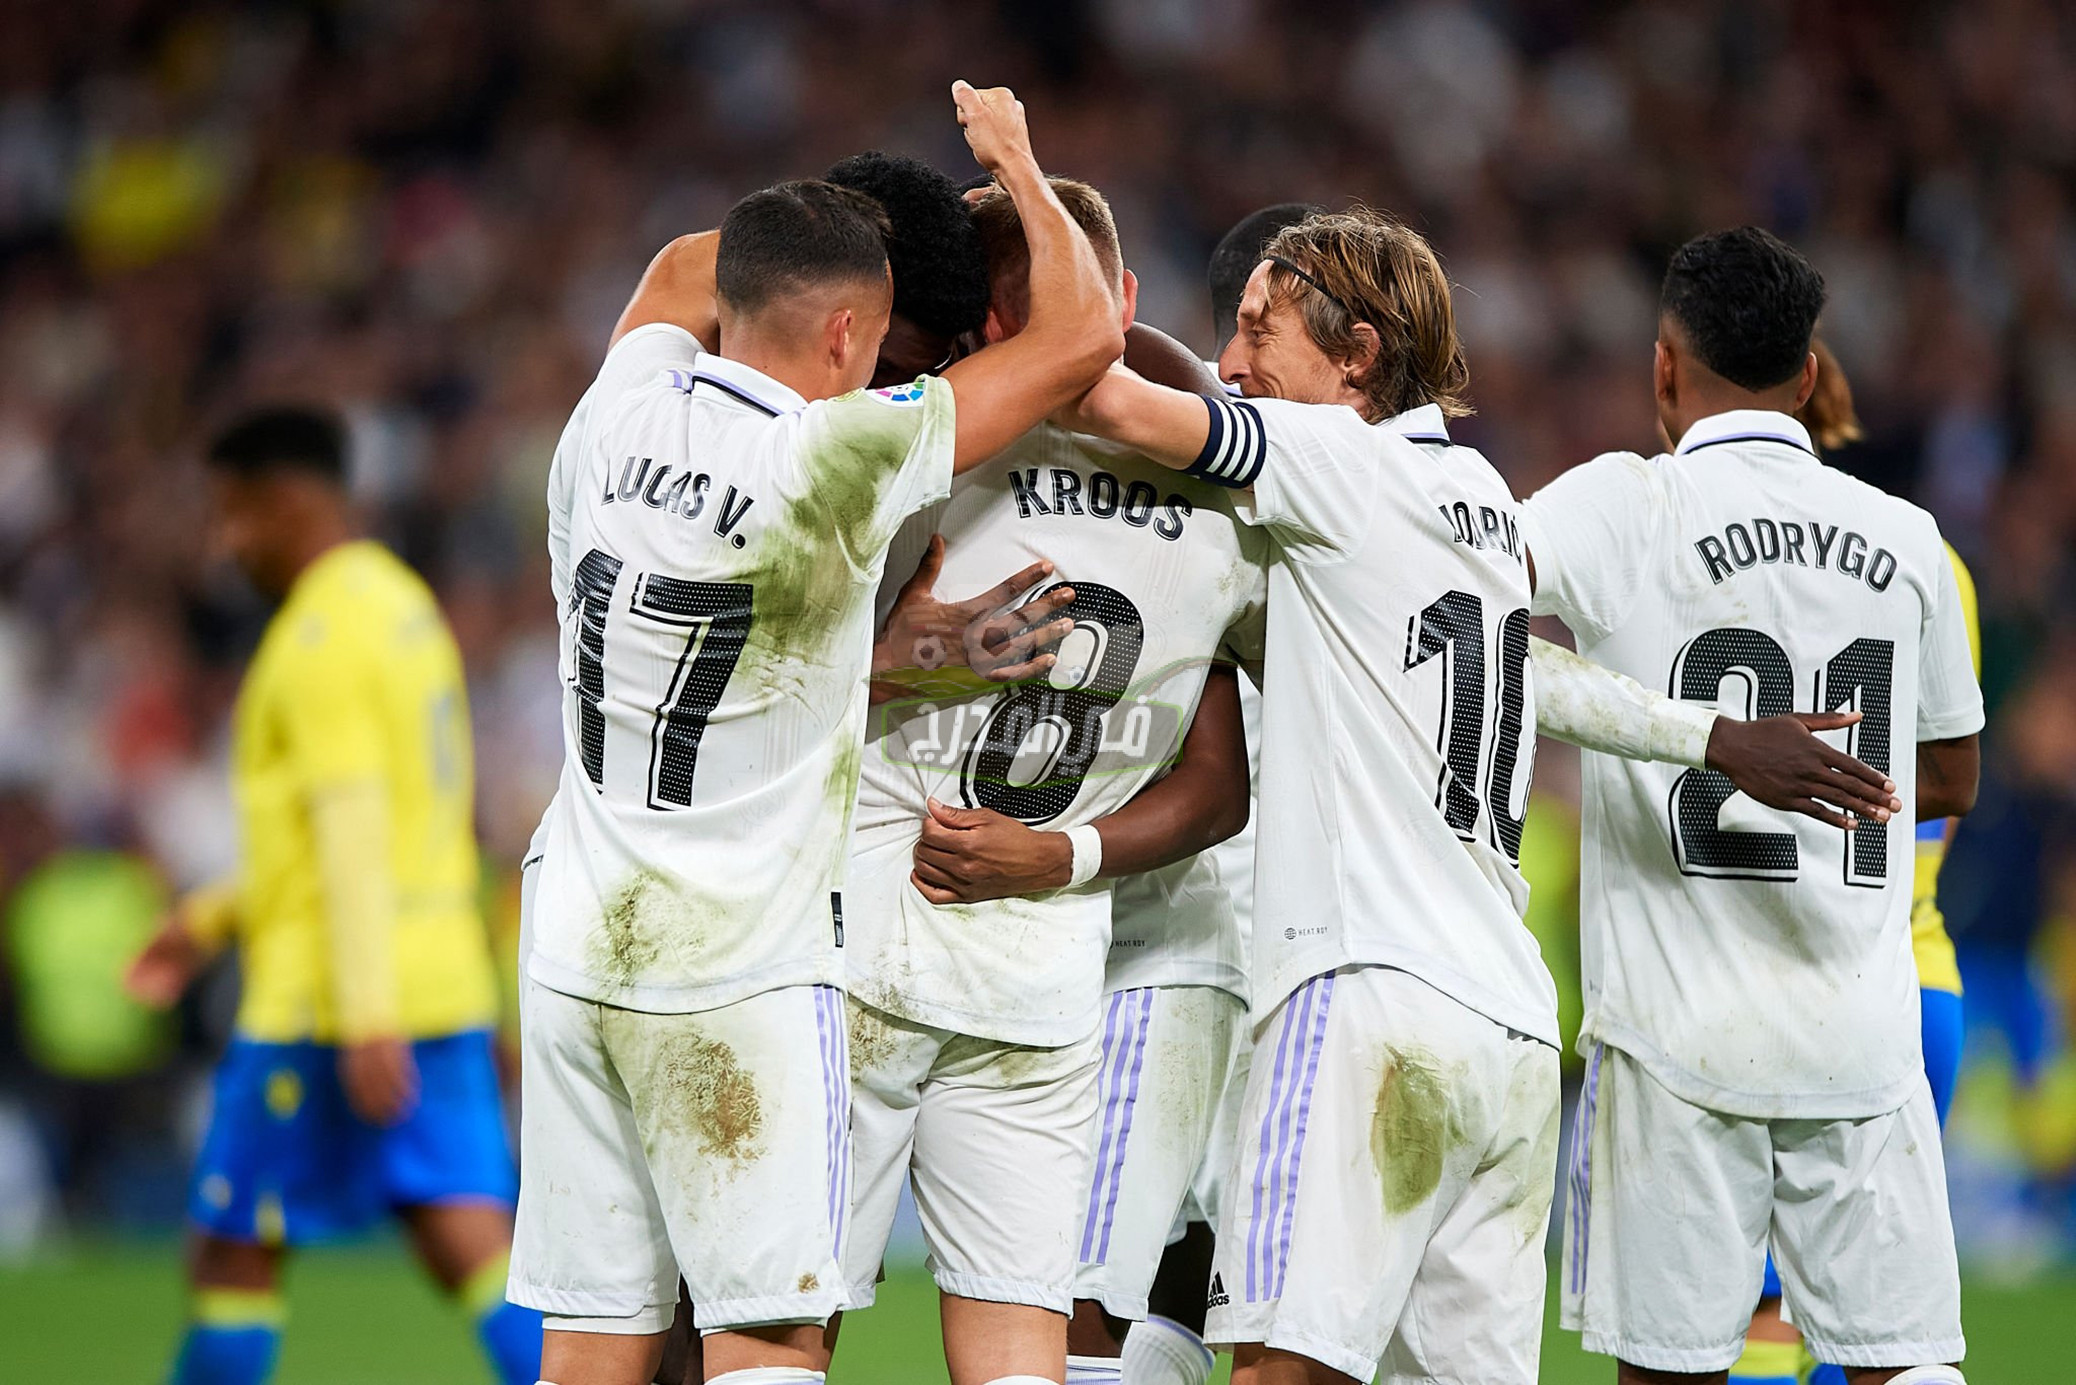 نتيجة مباراة ريال مدريد وقادش Real Madrid vs Cadiz اليوم في الدوري الإسباني